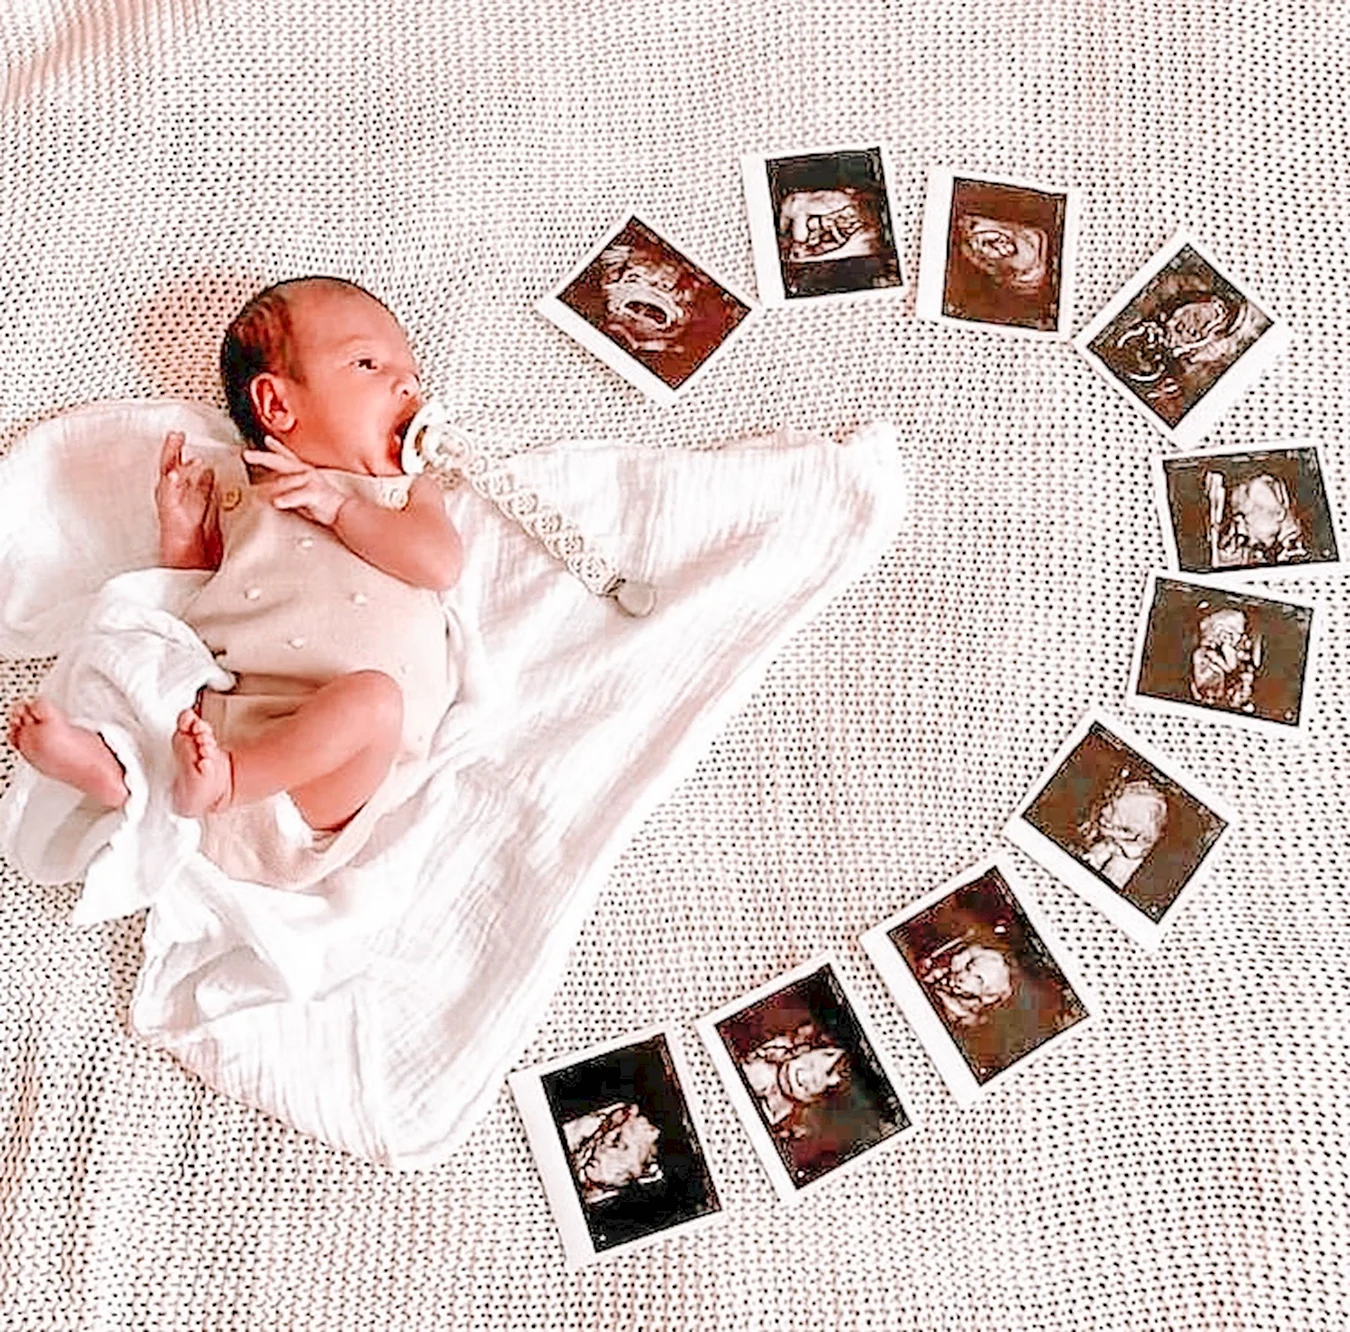 Идеи для фотосессии новорожденных